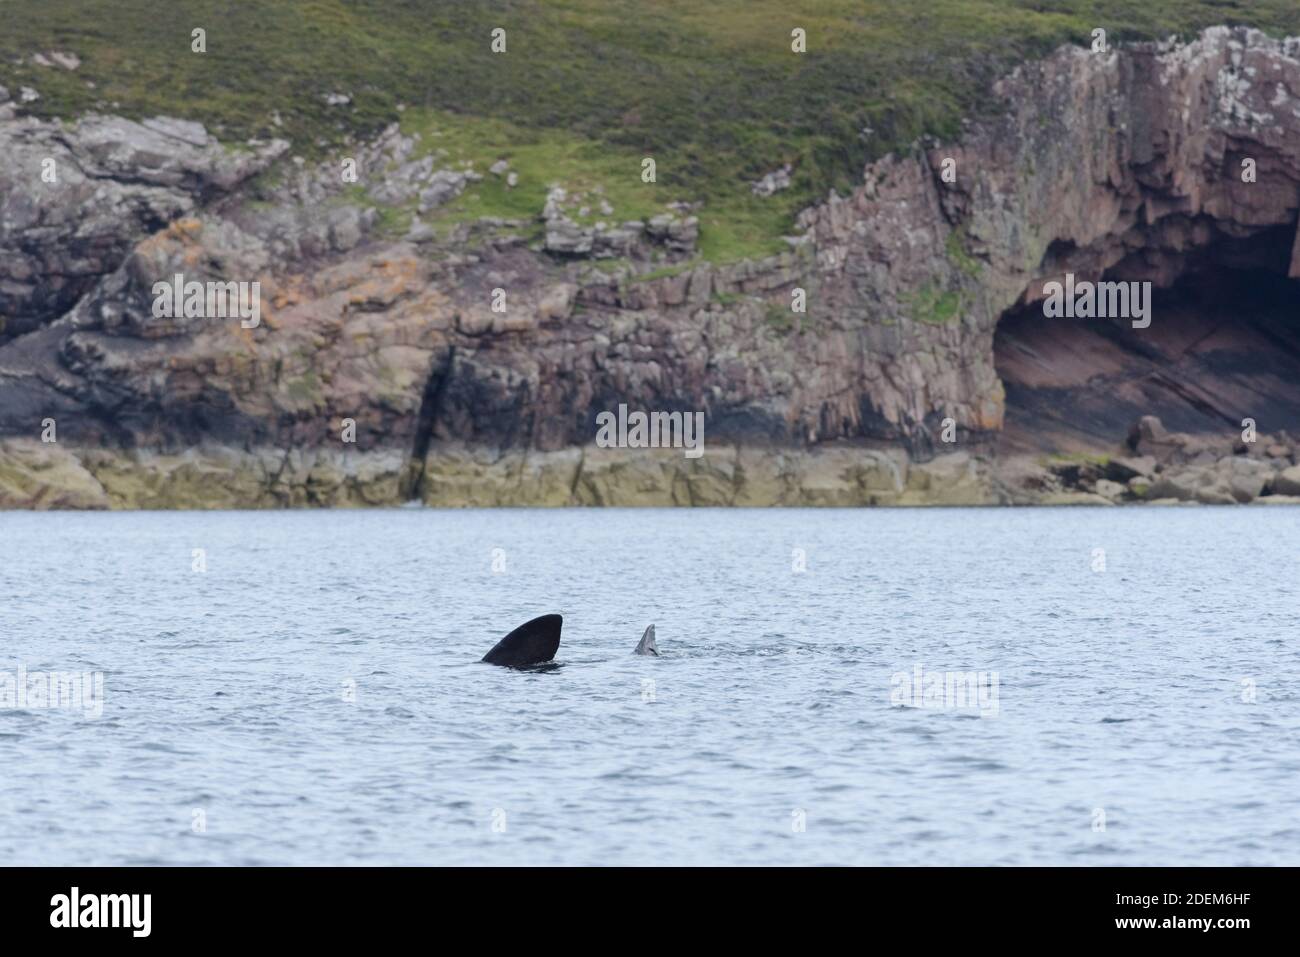 Paysage géologique avec un requin pèlerin nageant au premier plan de la mer. Zone sauvage et naturelle de l'île de raasay en écosse, Royaume-Uni. Biologie marine. Banque D'Images